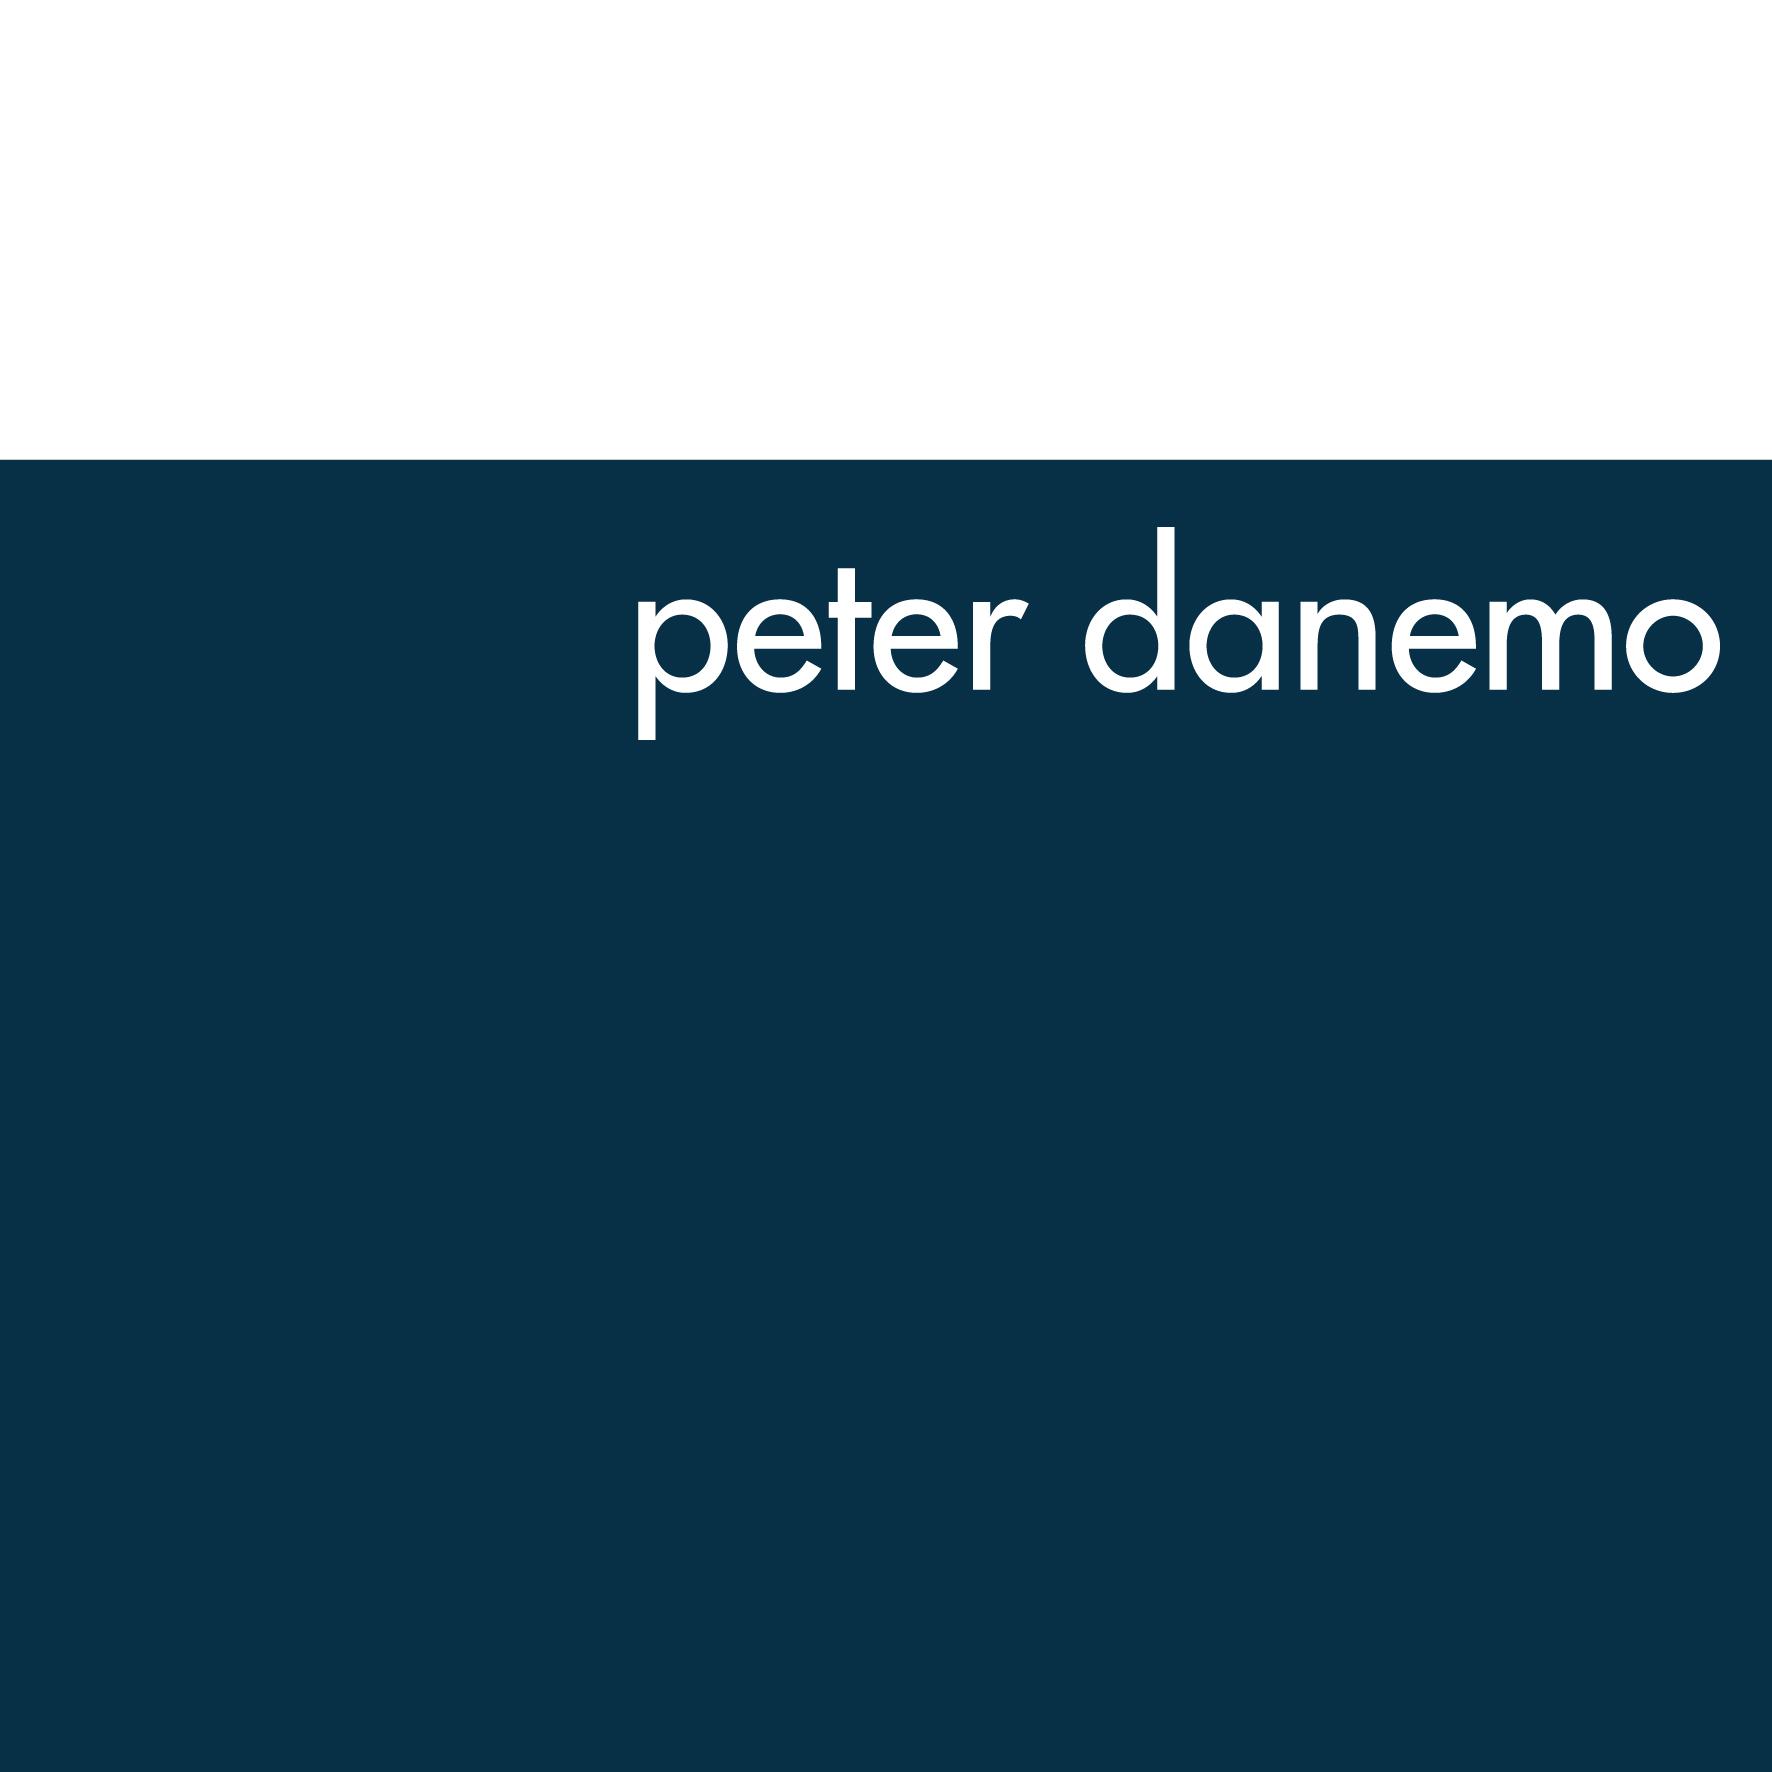 Peter Danemo